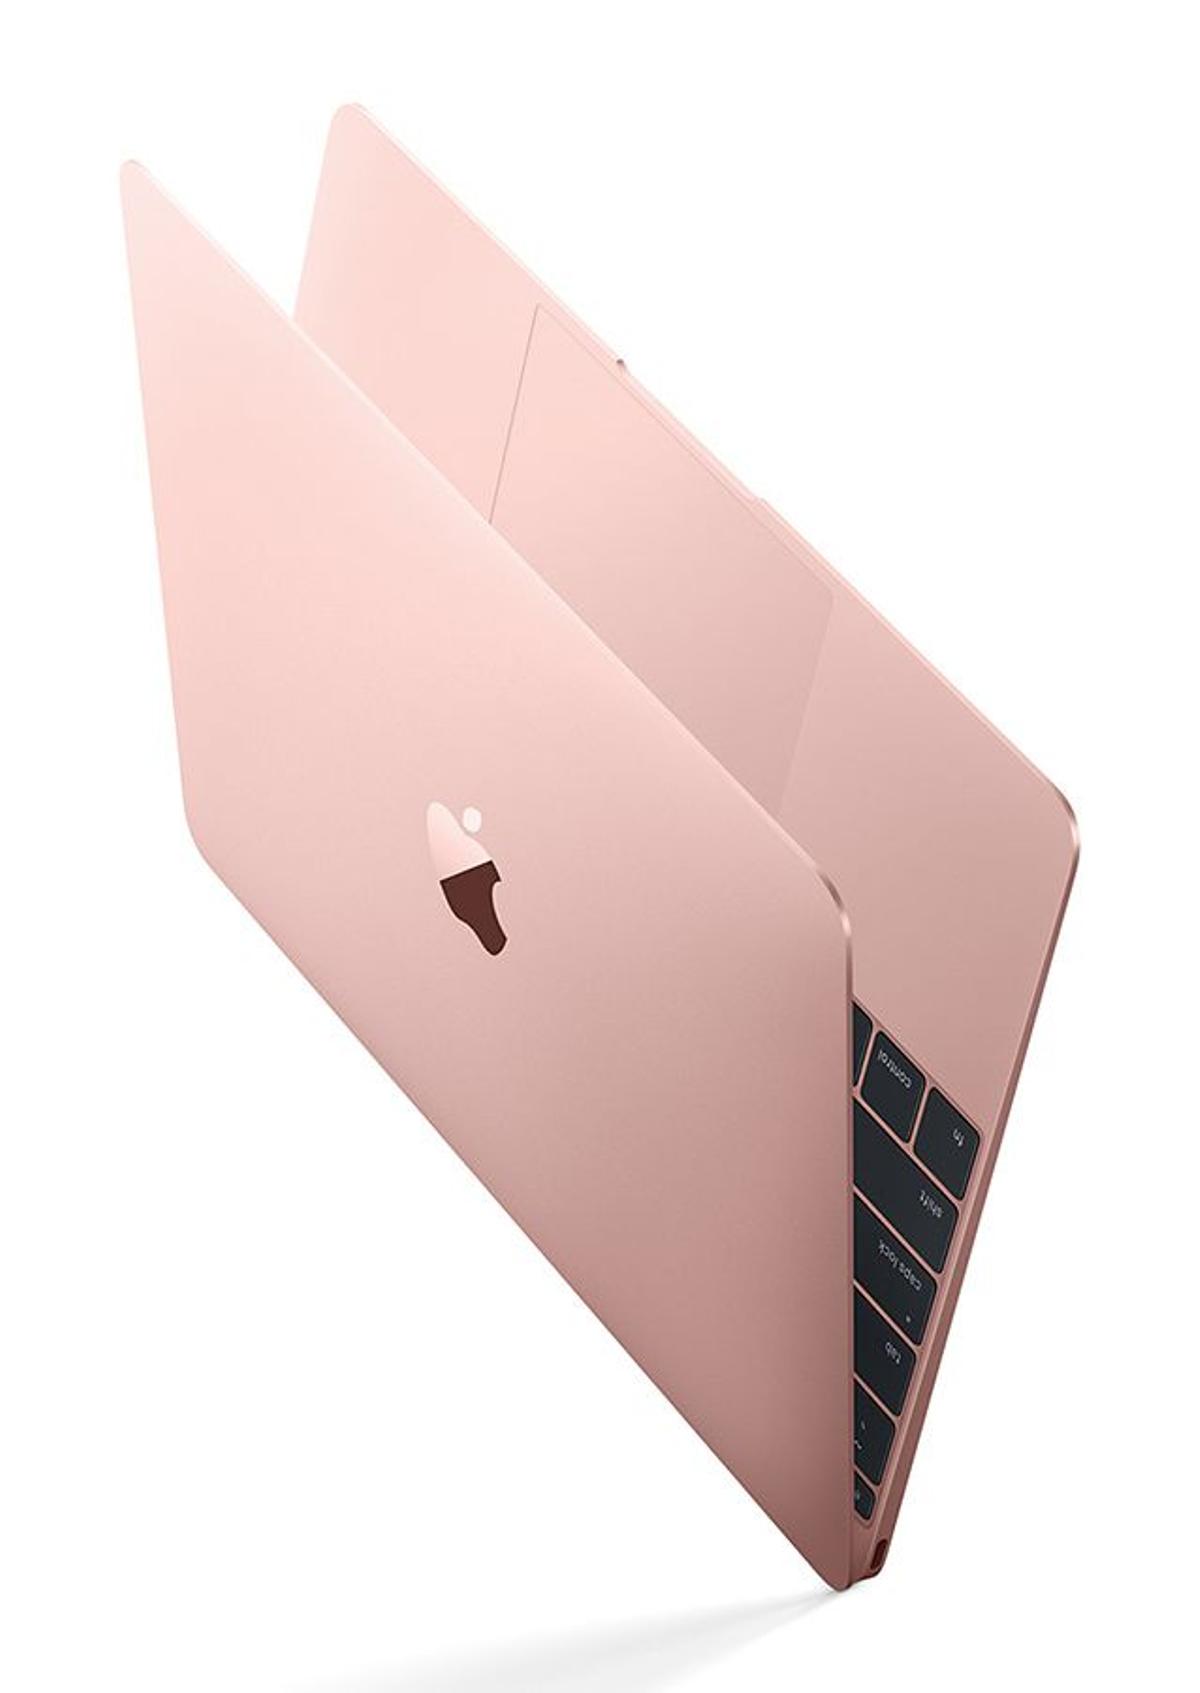 MacBook 256 Gb de oro rosa de Apple